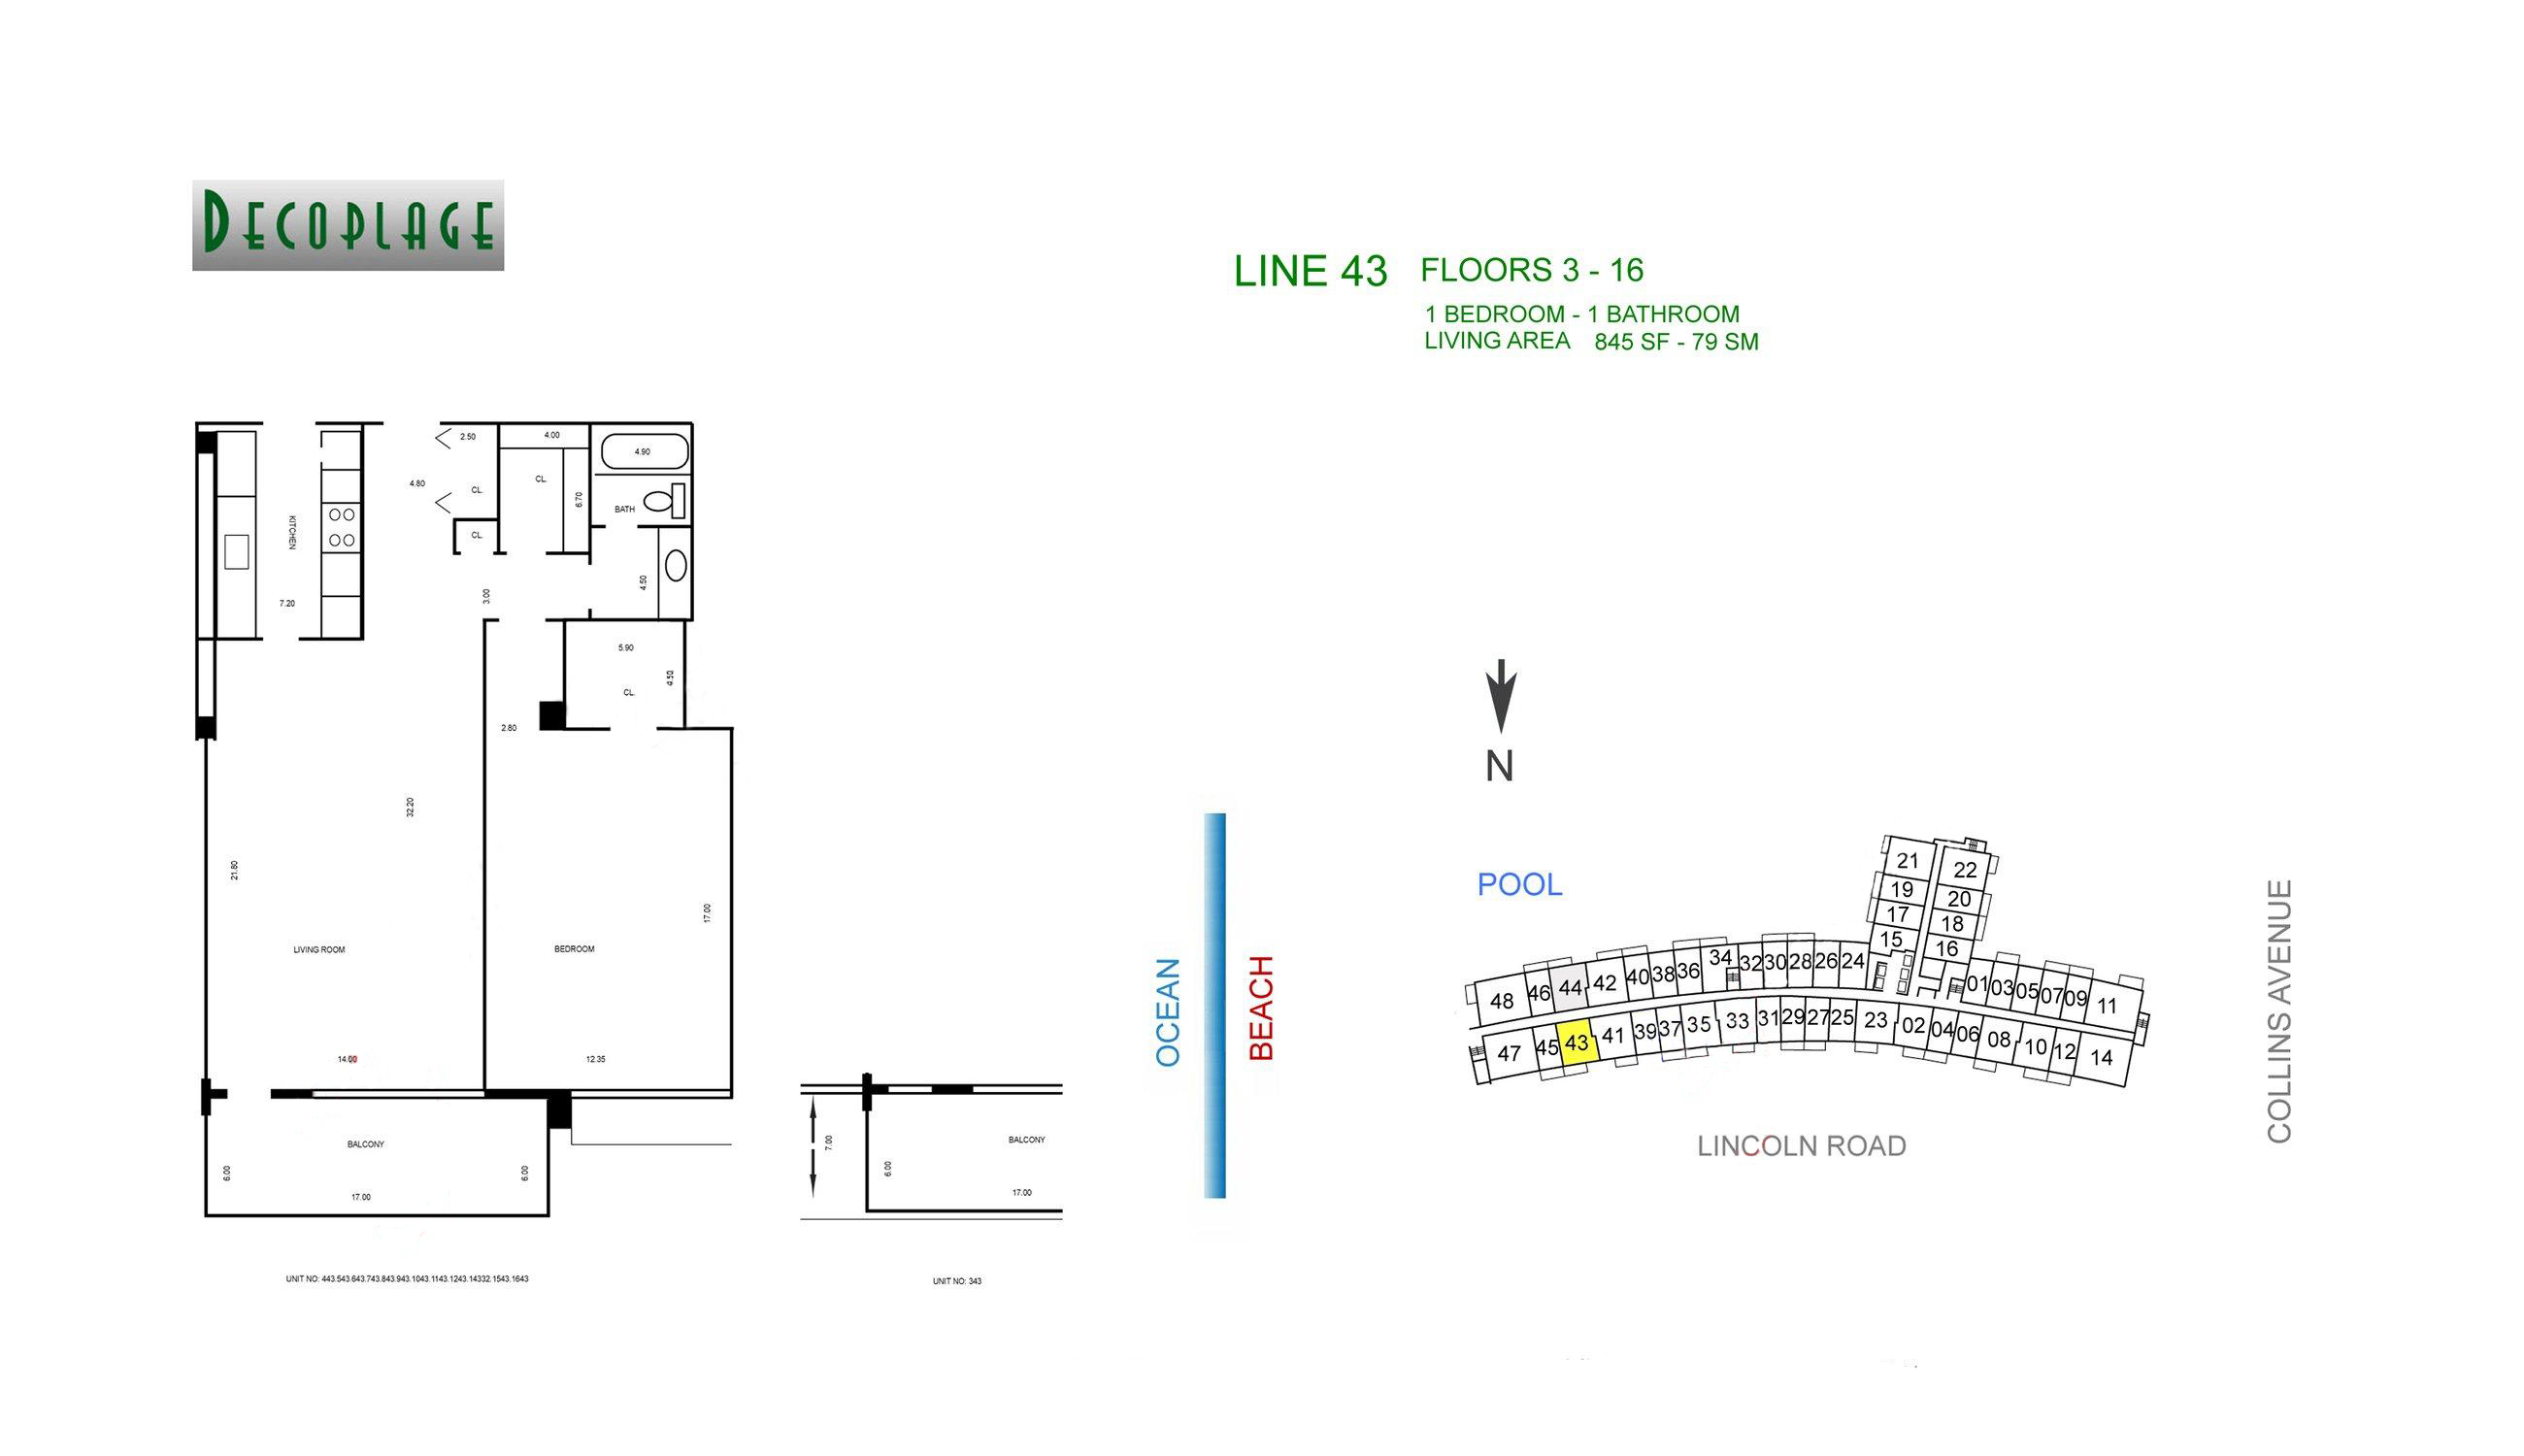 Decoplage Lines 43 Floors 3-16